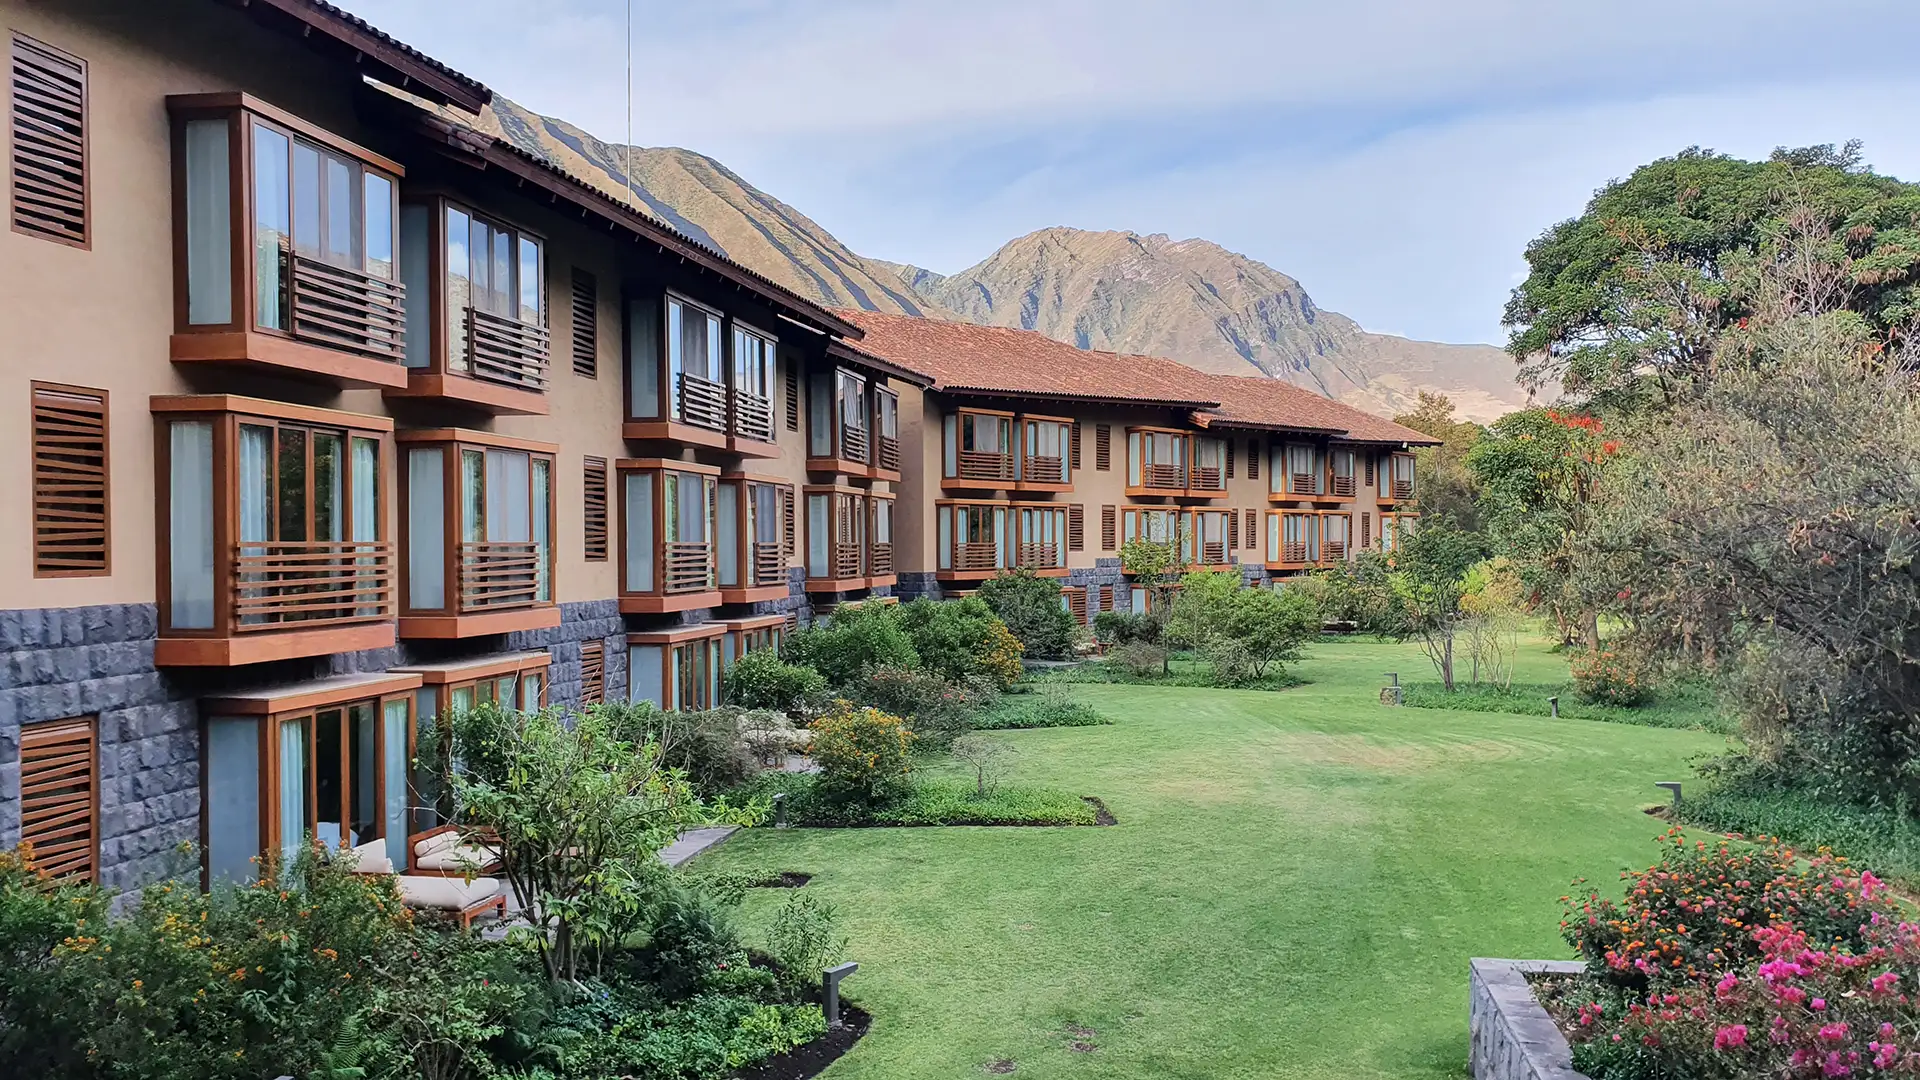 REVIEW Hotel Tambo del Inka Resort & Spa Valle Sagrado: todo el lujo para disfrutar del corazón de los Andes